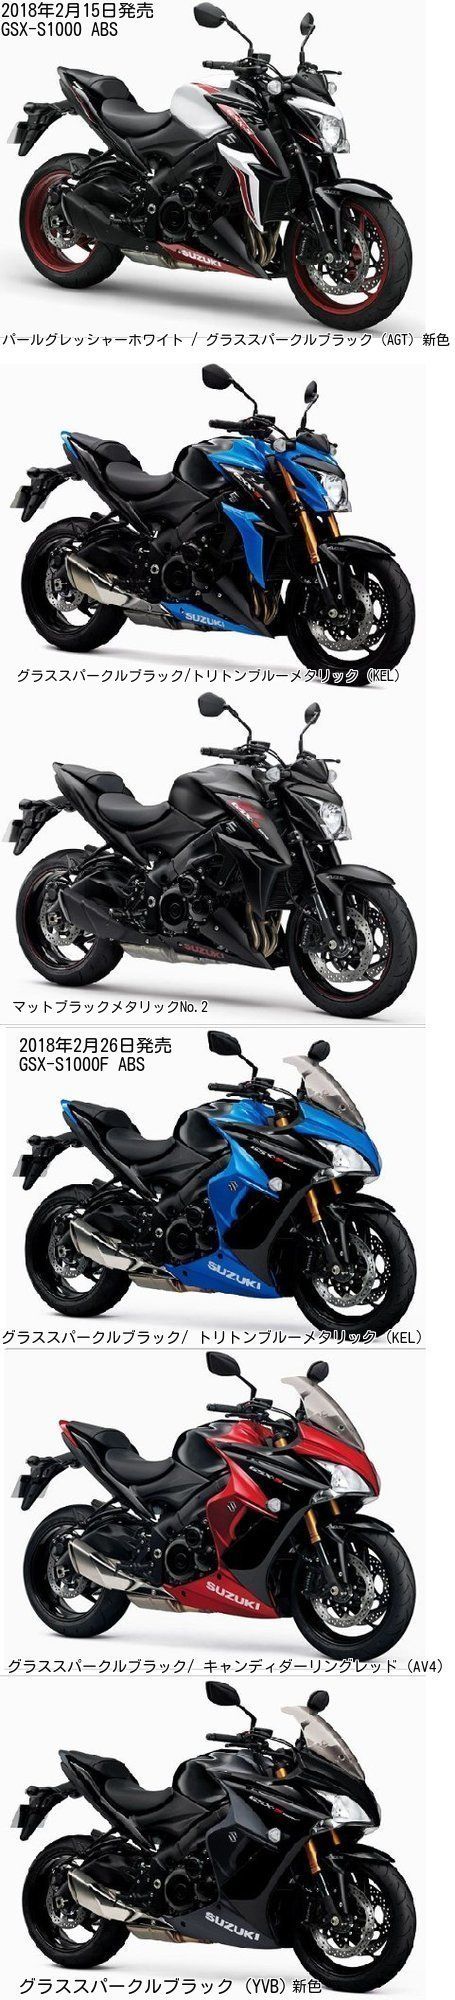 2018年2月26日発売の「GSX-S1000 ABS」と「GSX-S1000F ABS」